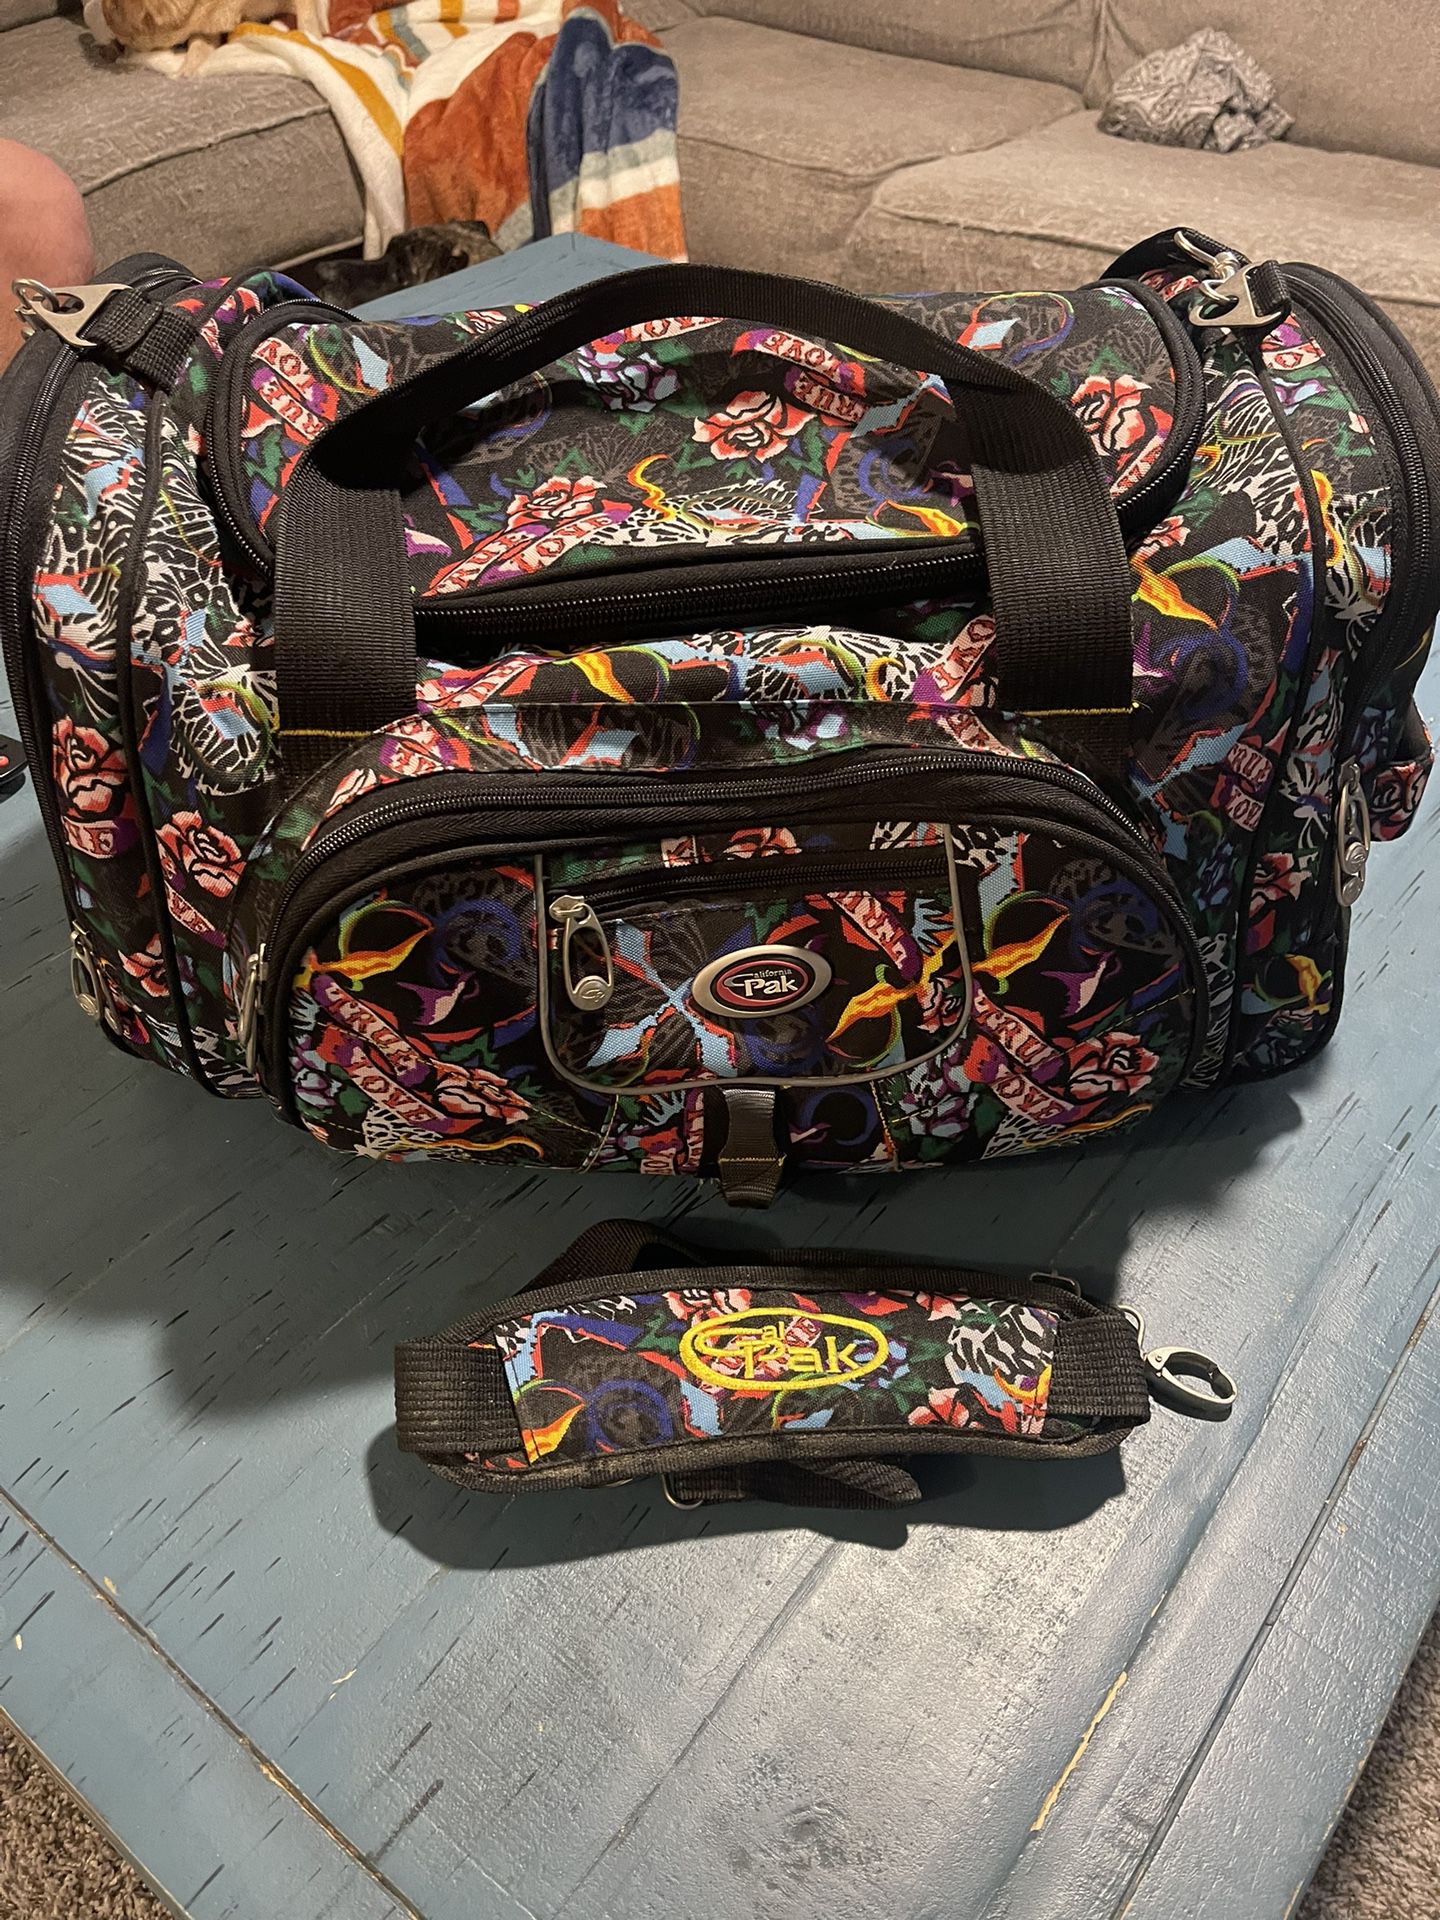 Cal Pak Travel Bag Duffle Bag Floral